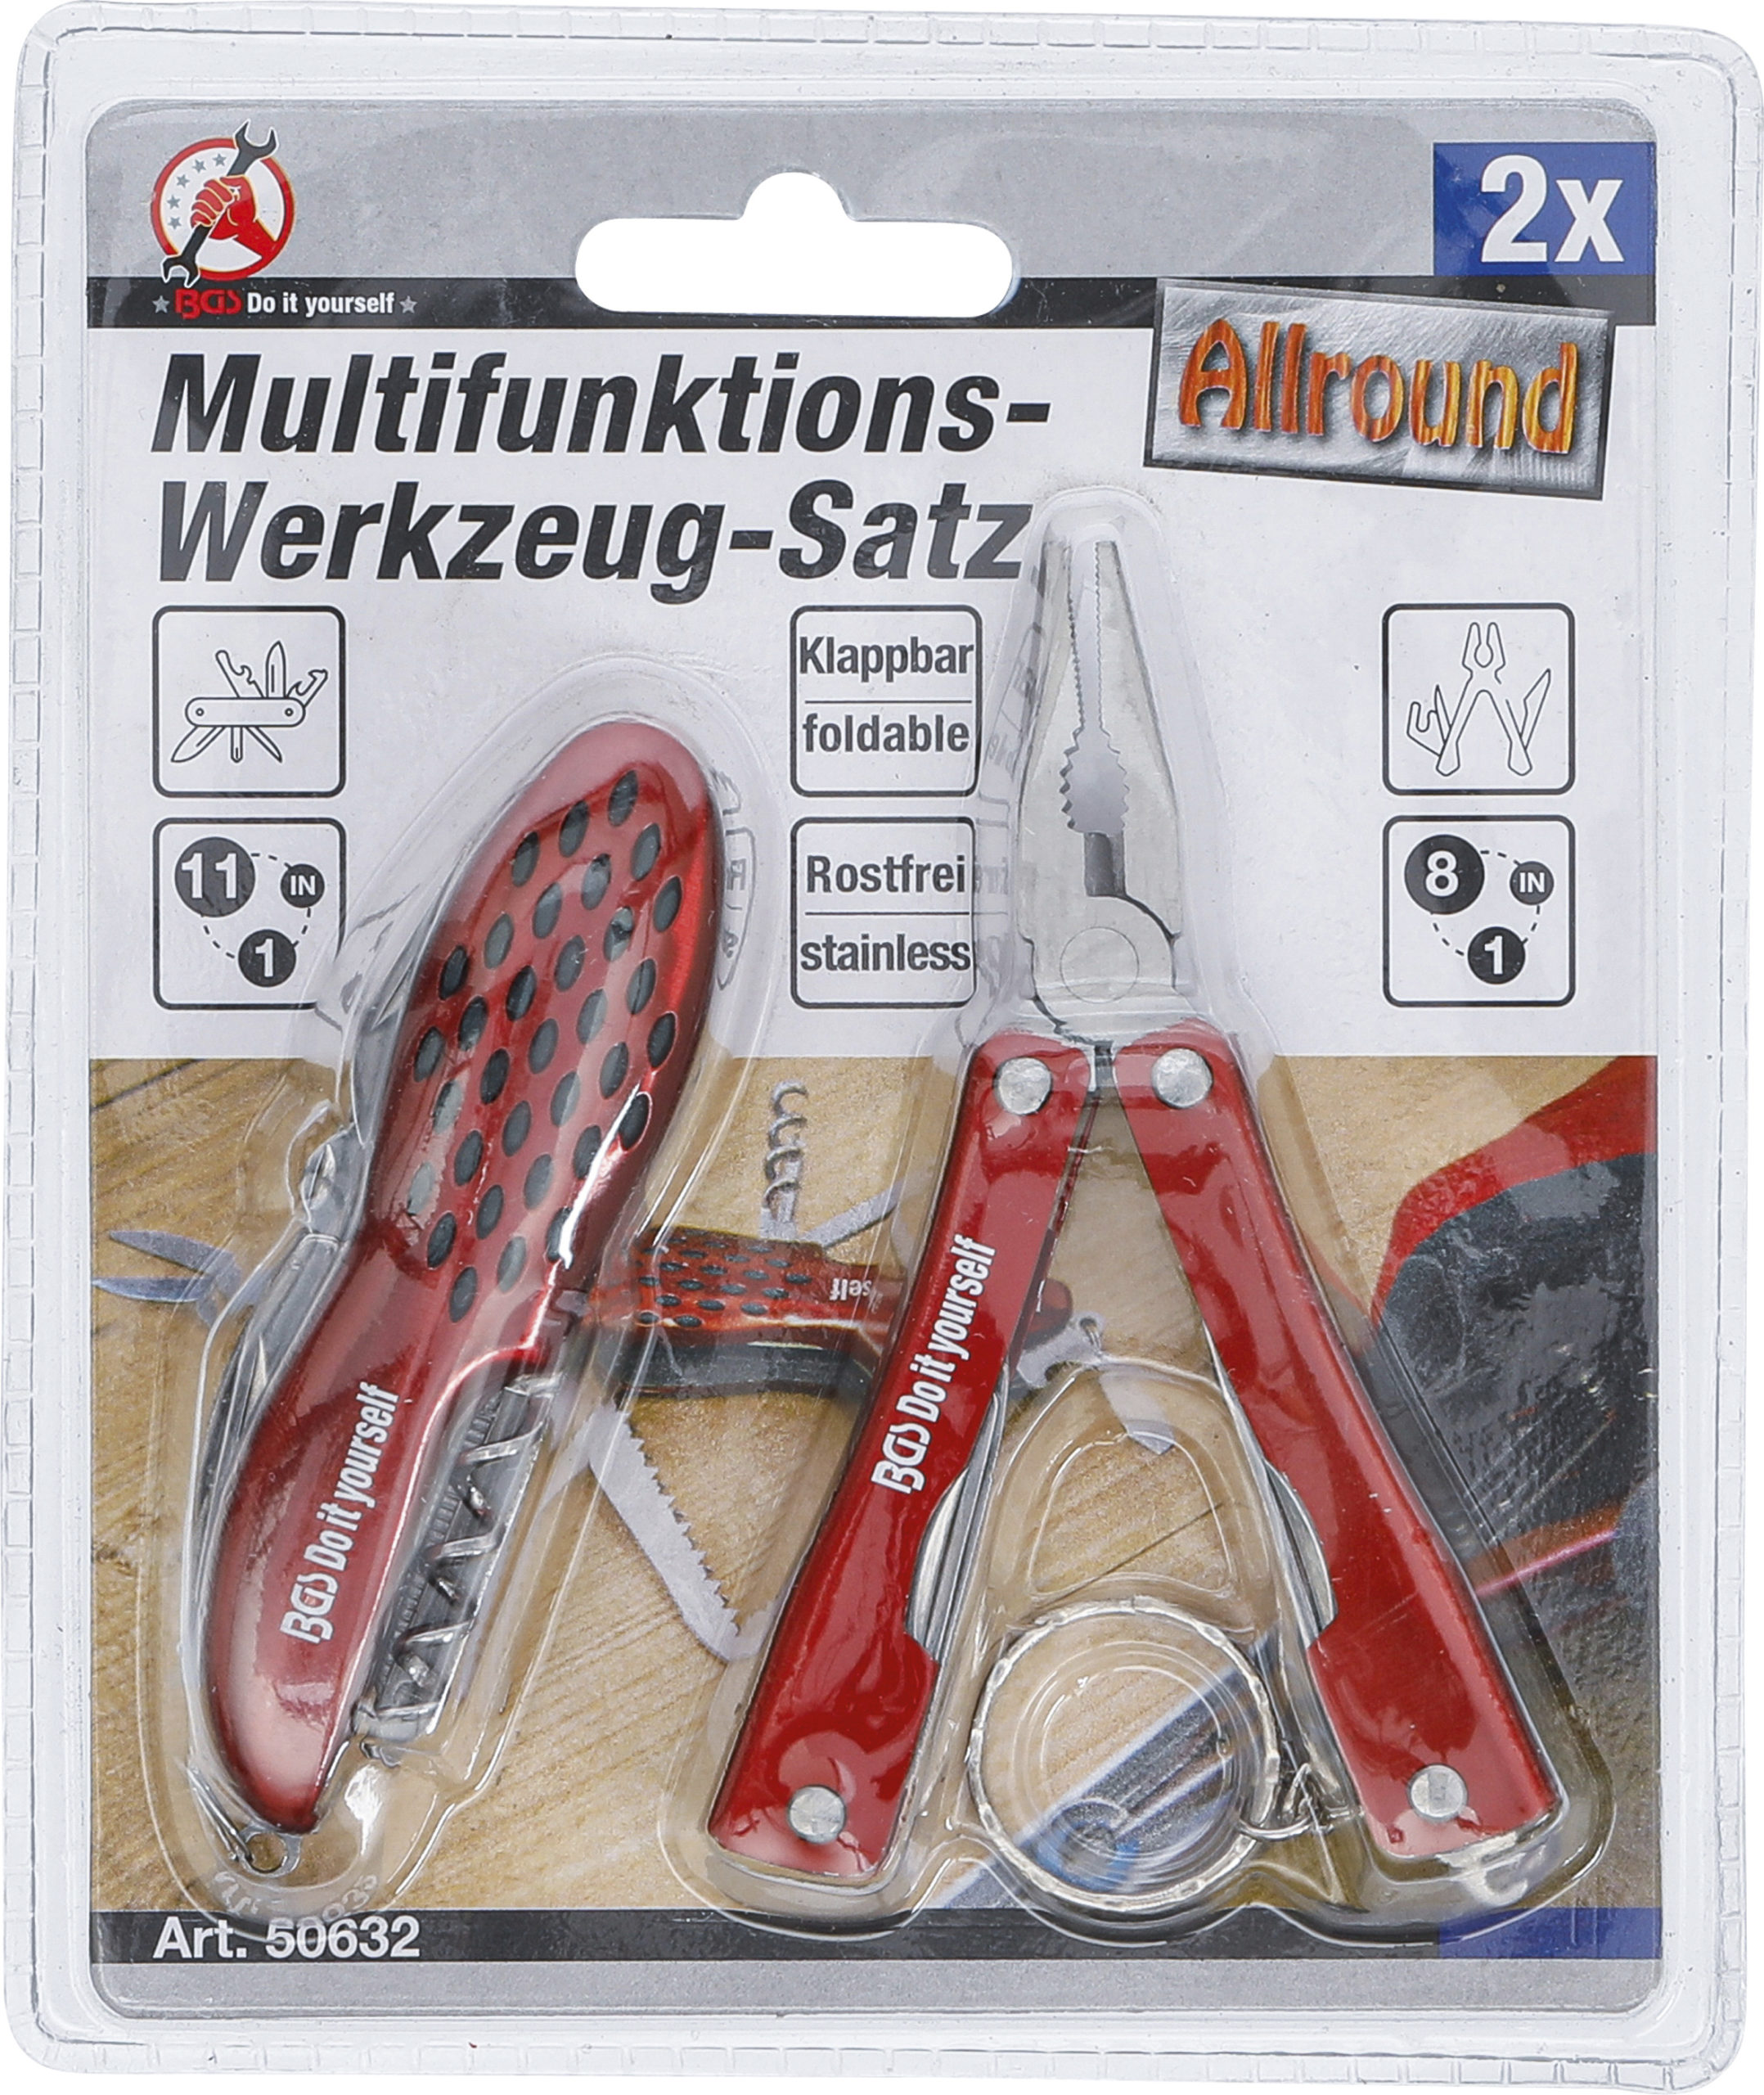 Multifunktions-Werkzeug-Satz, 2-tlg.